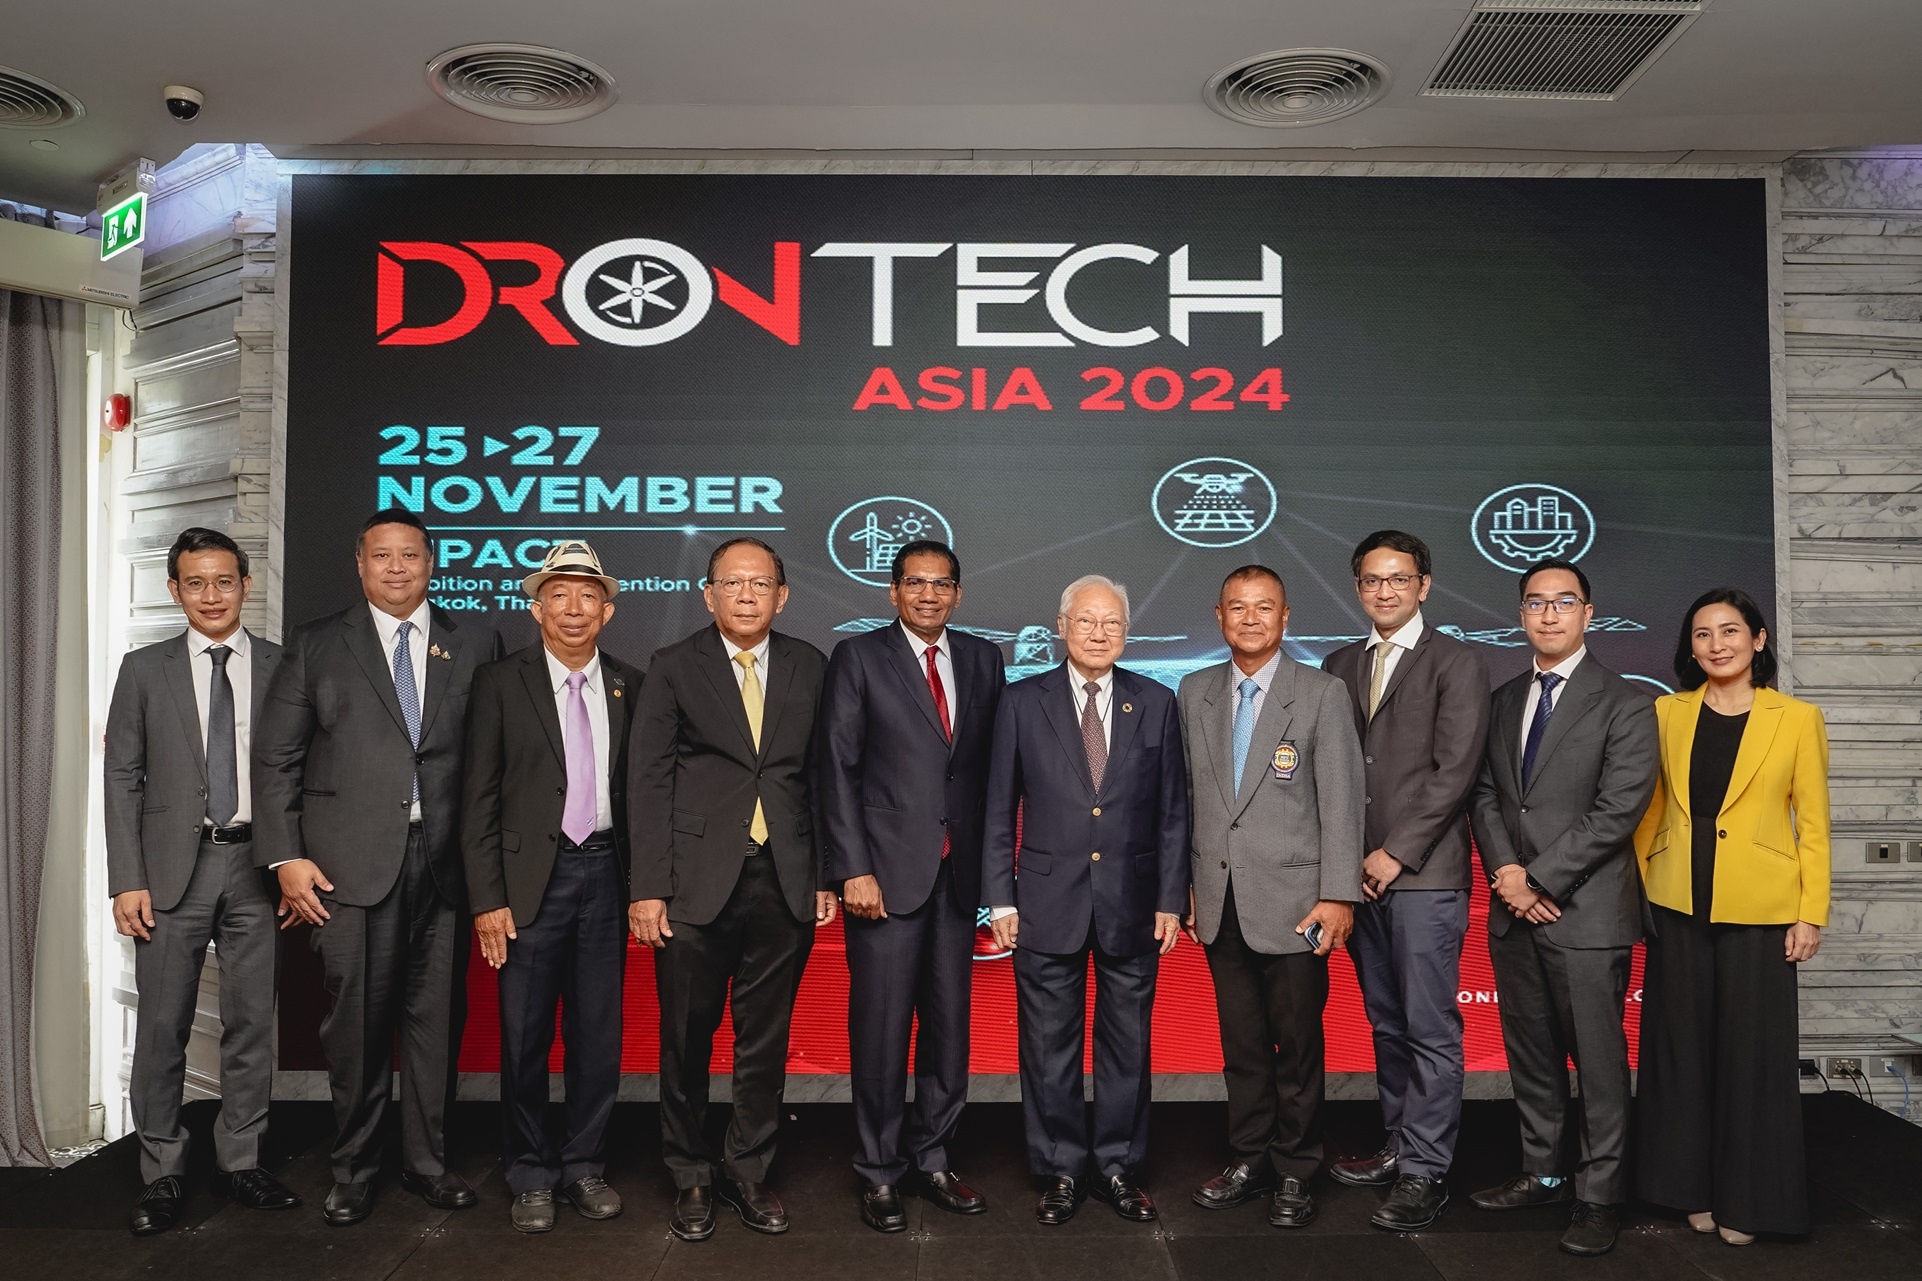 จีเอ็มแอล เอ็กซิบิชั่น จับมือพันธมิตรเดินหน้าจัดงาน ‘DronTech Asia 2024’ ครั้งแรกในไทย! โชว์ศักยภาพและความก้าวหน้าอุตสาหกรรมโดรน